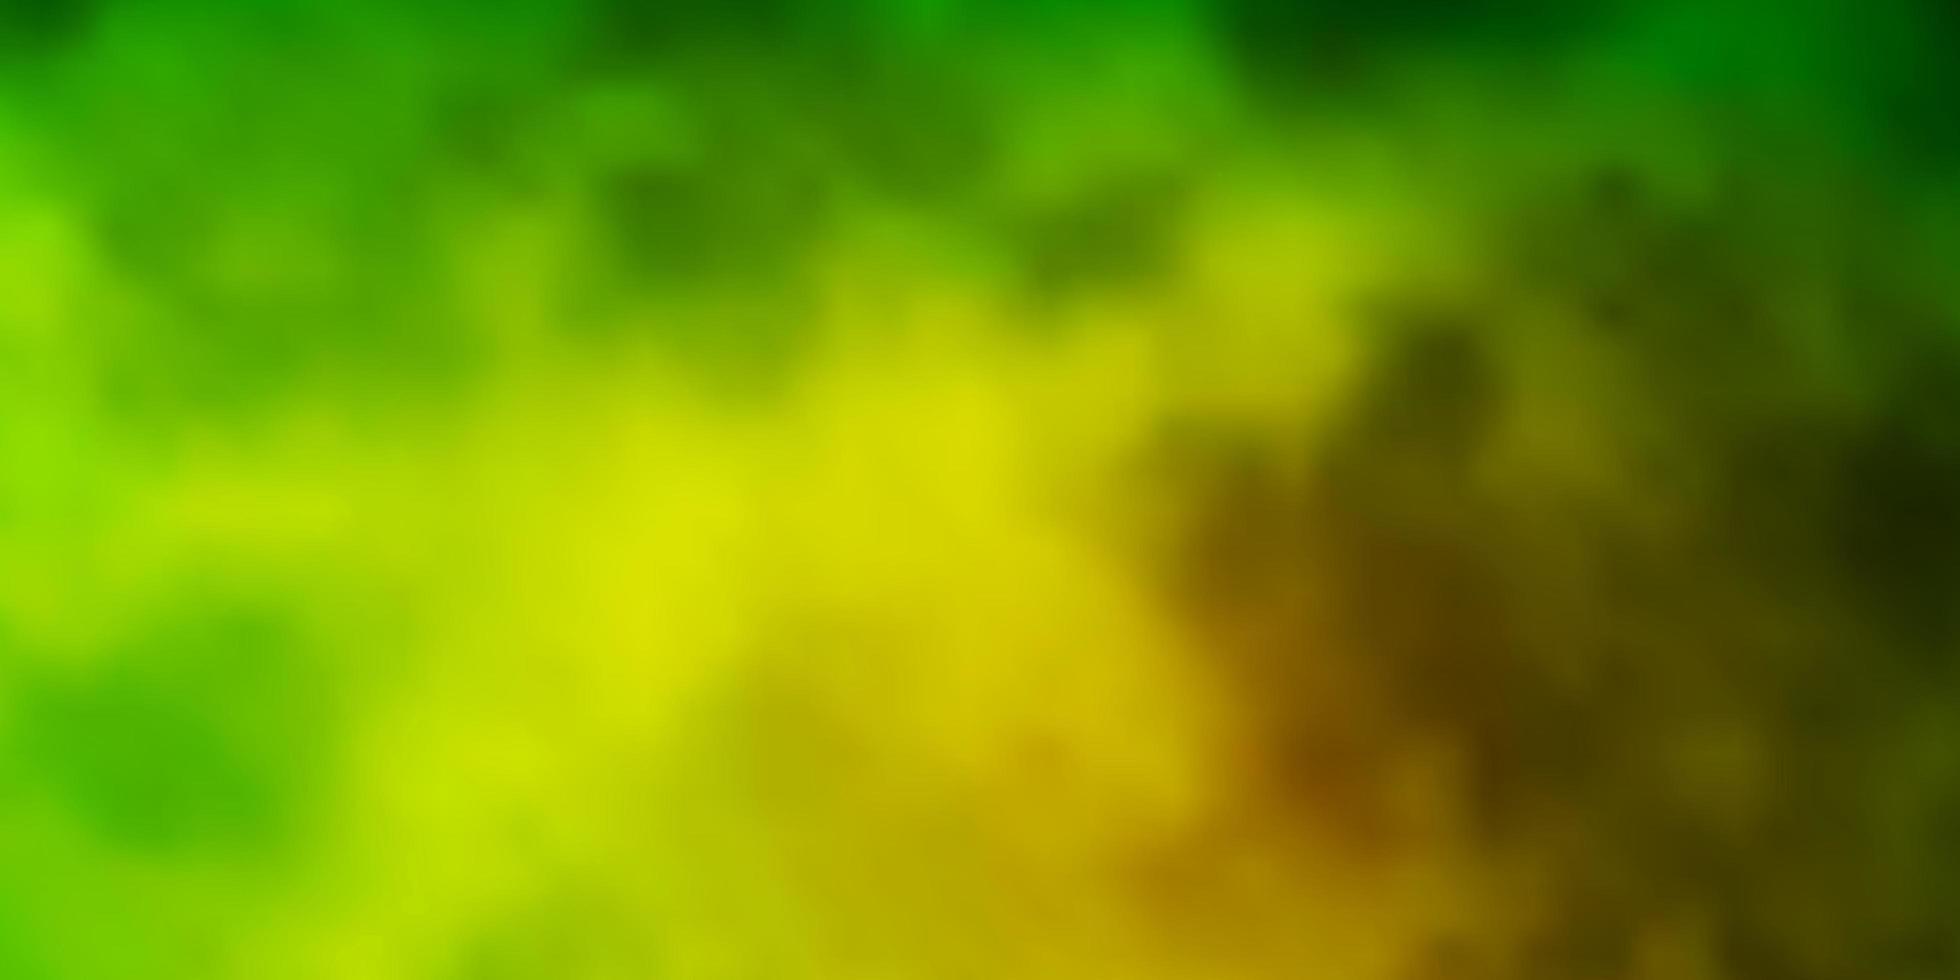 mörkgrön, gul vektorlayout med molnlandskap. vektor